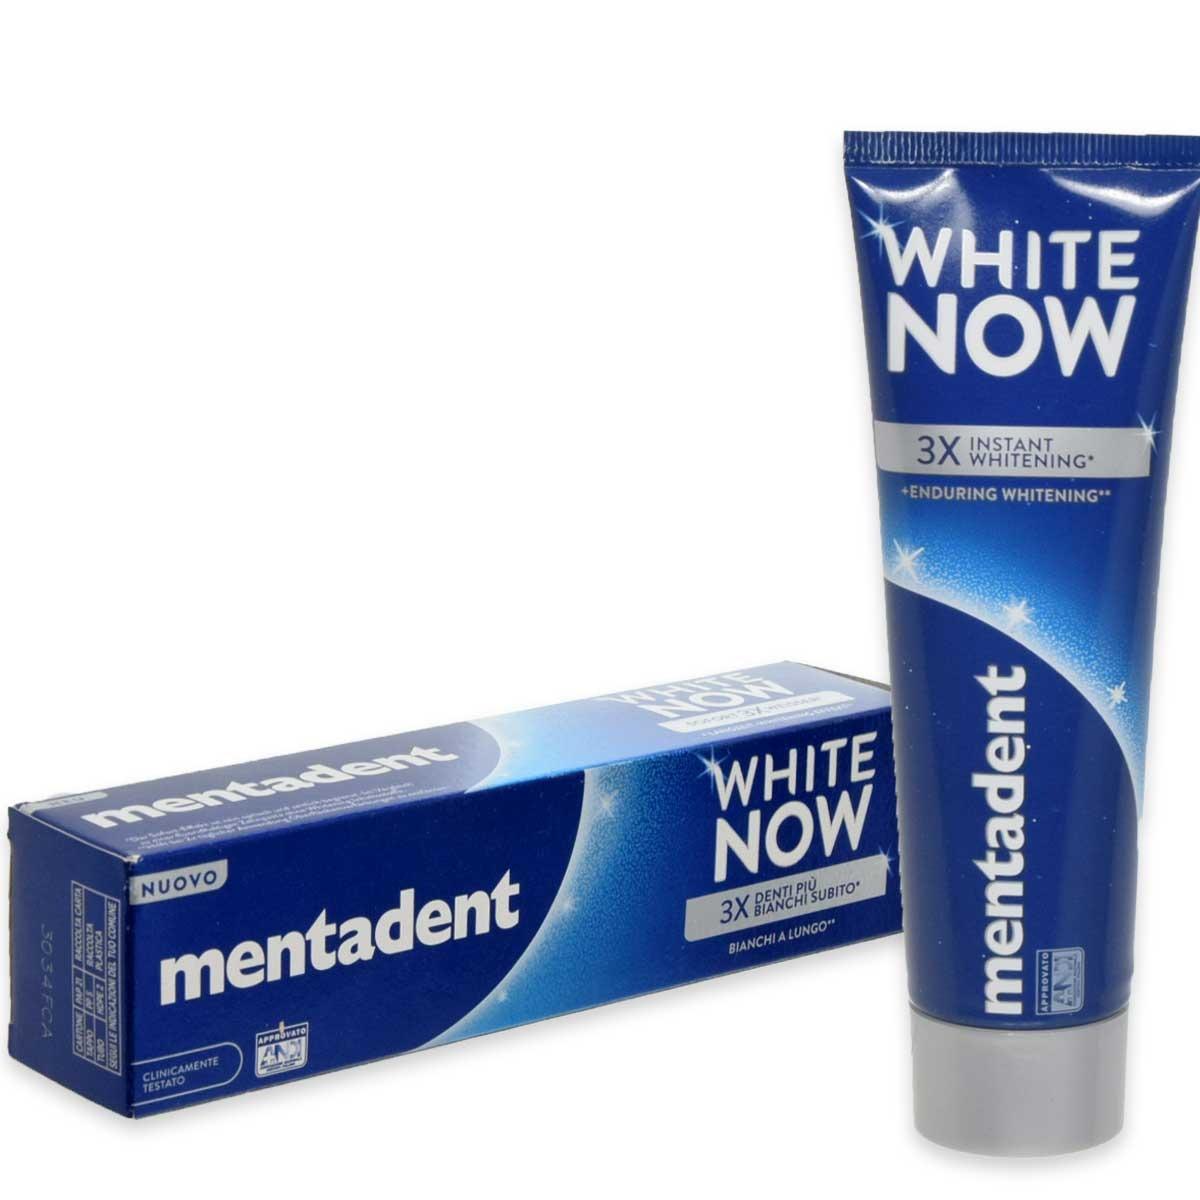 Mentadent dent. white now 75 ml